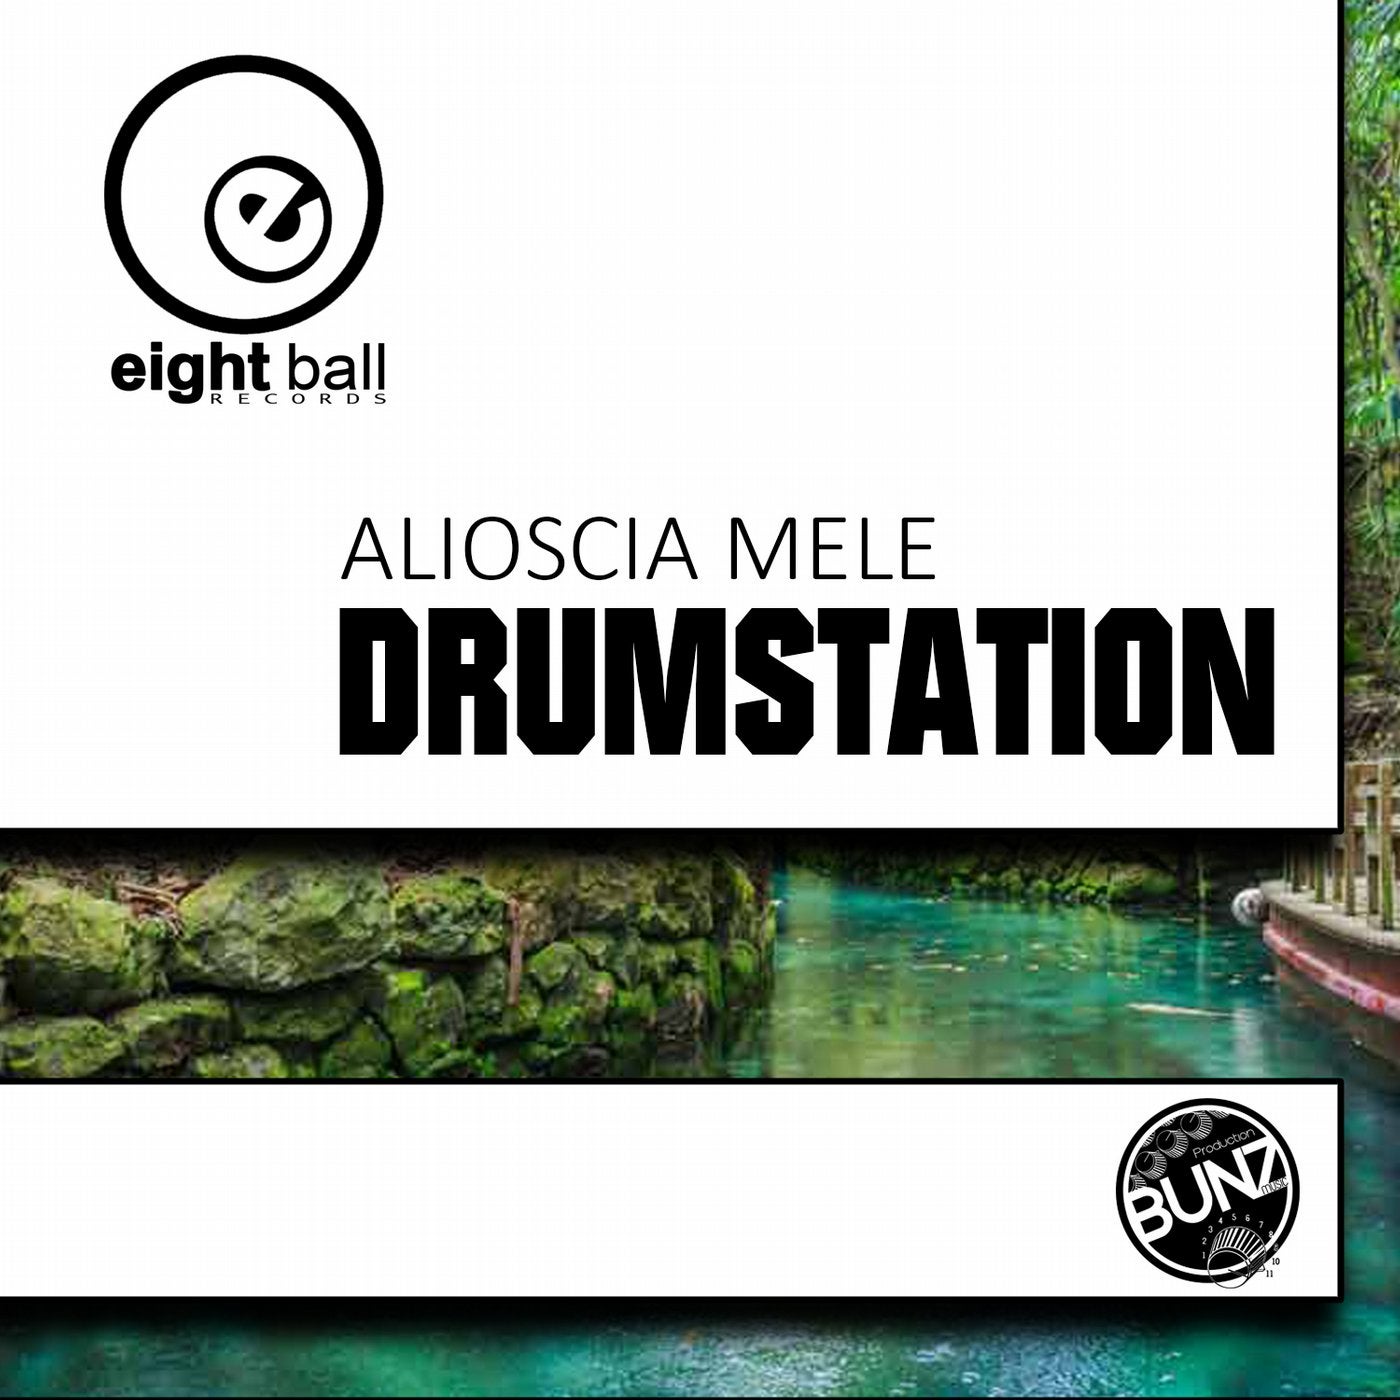 Drumstation (Bunz Music Remix)